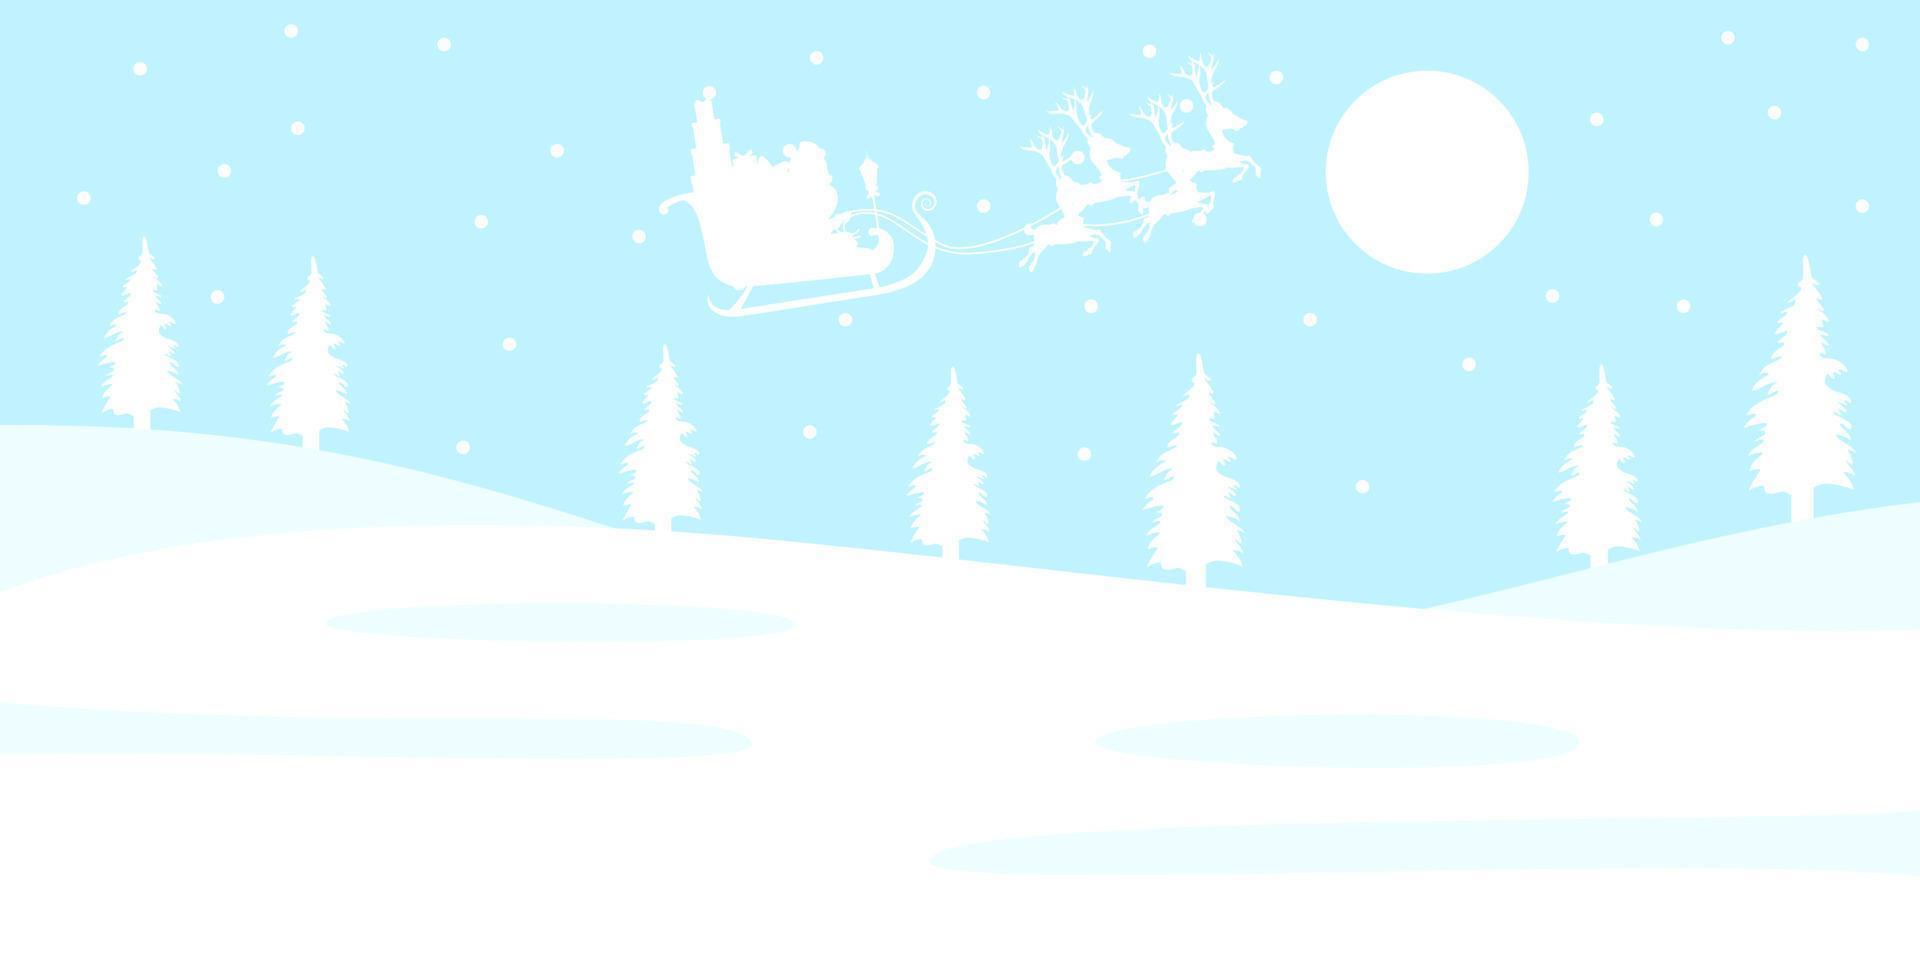 joli beau personnage du père noël volant sur le ciel avec un traîneau avec des rennes avec des coffrets cadeaux fond de silhouette de couleur blanche vecteur